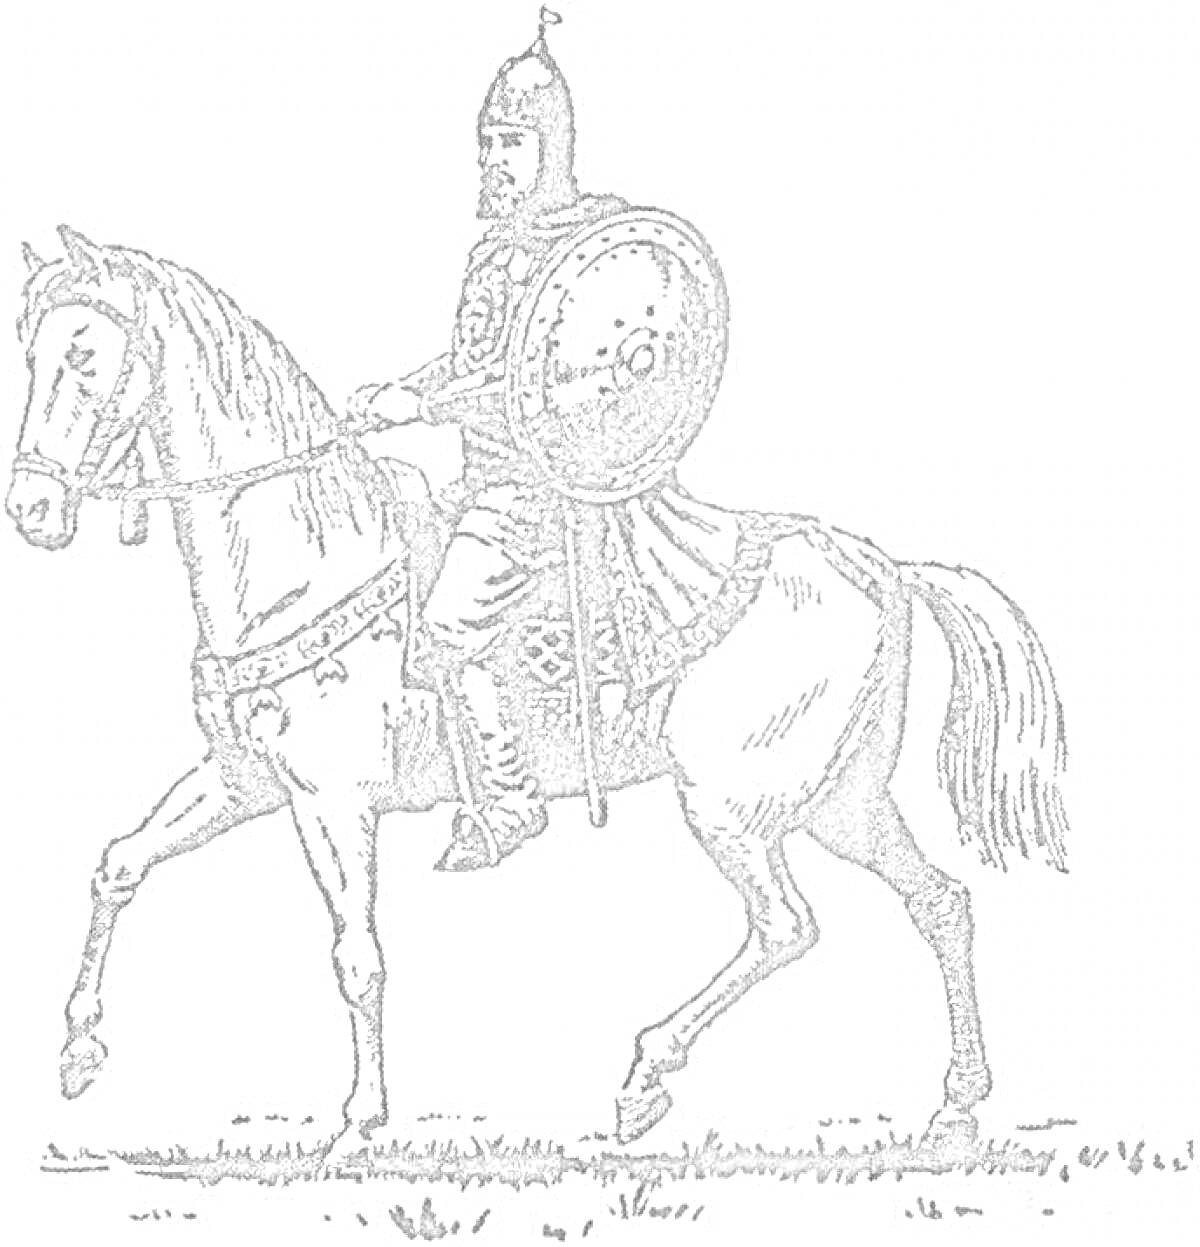 Воин в доспехах на лошади с копьем и щитом.